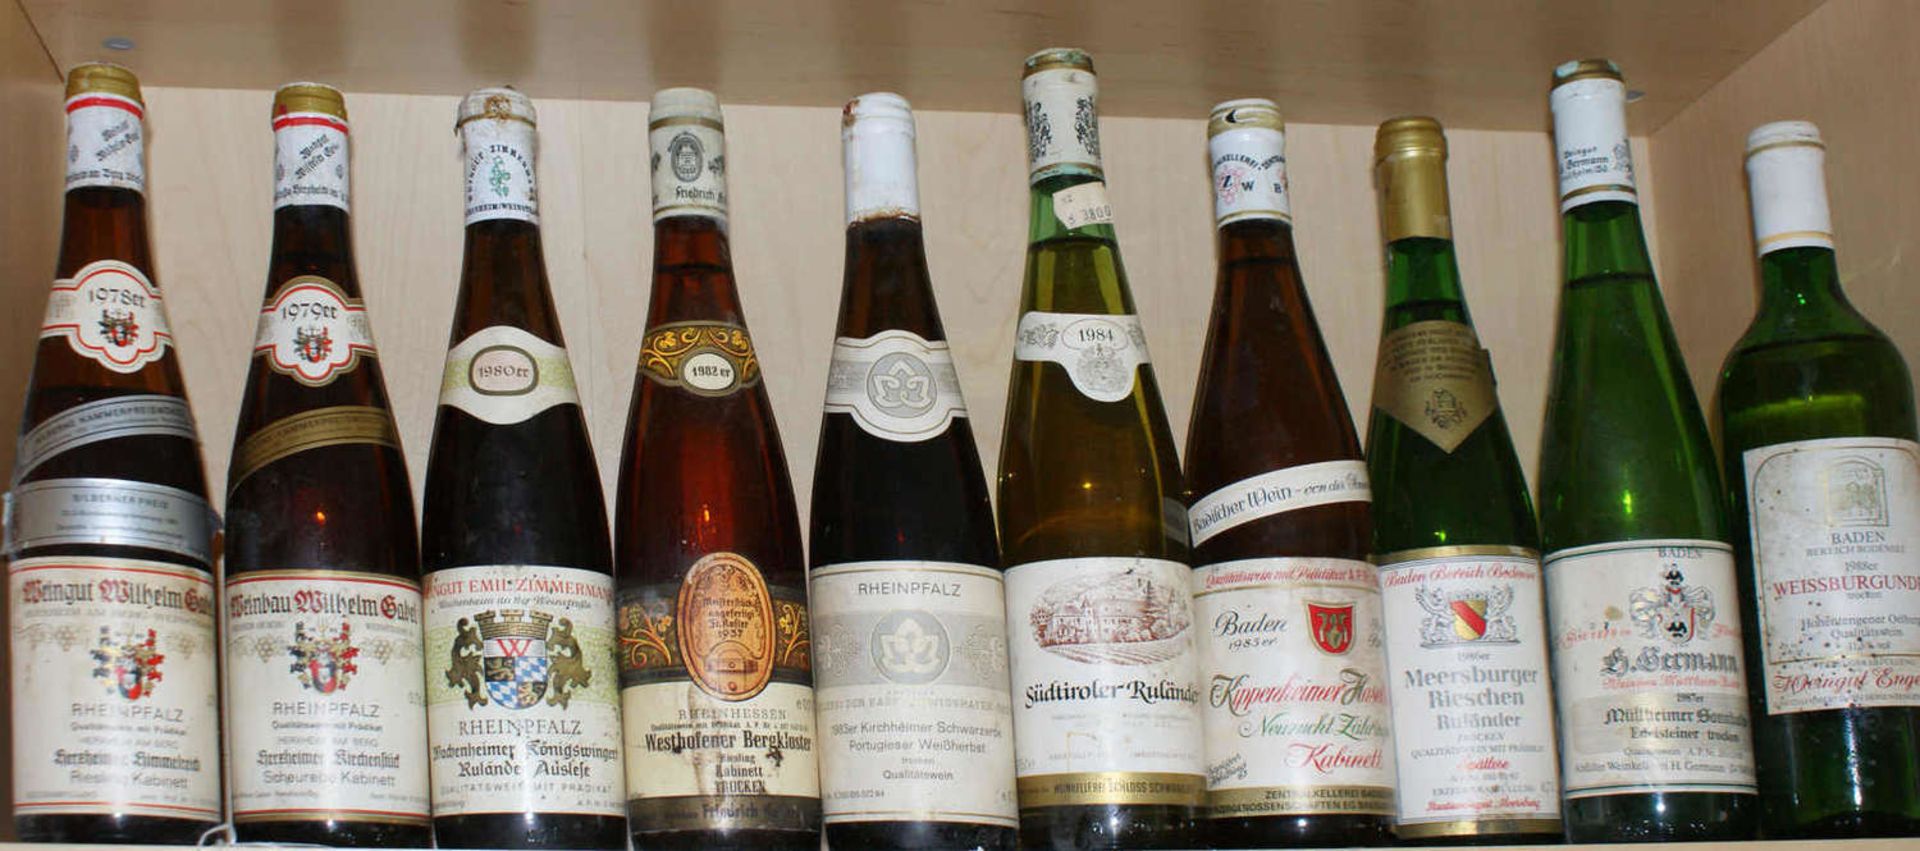 Konvolut Weisswein, verschiedene Winzer, Jahrgänge 1978-1980, 1982-1988. Insgesamt 10 Flaschen.